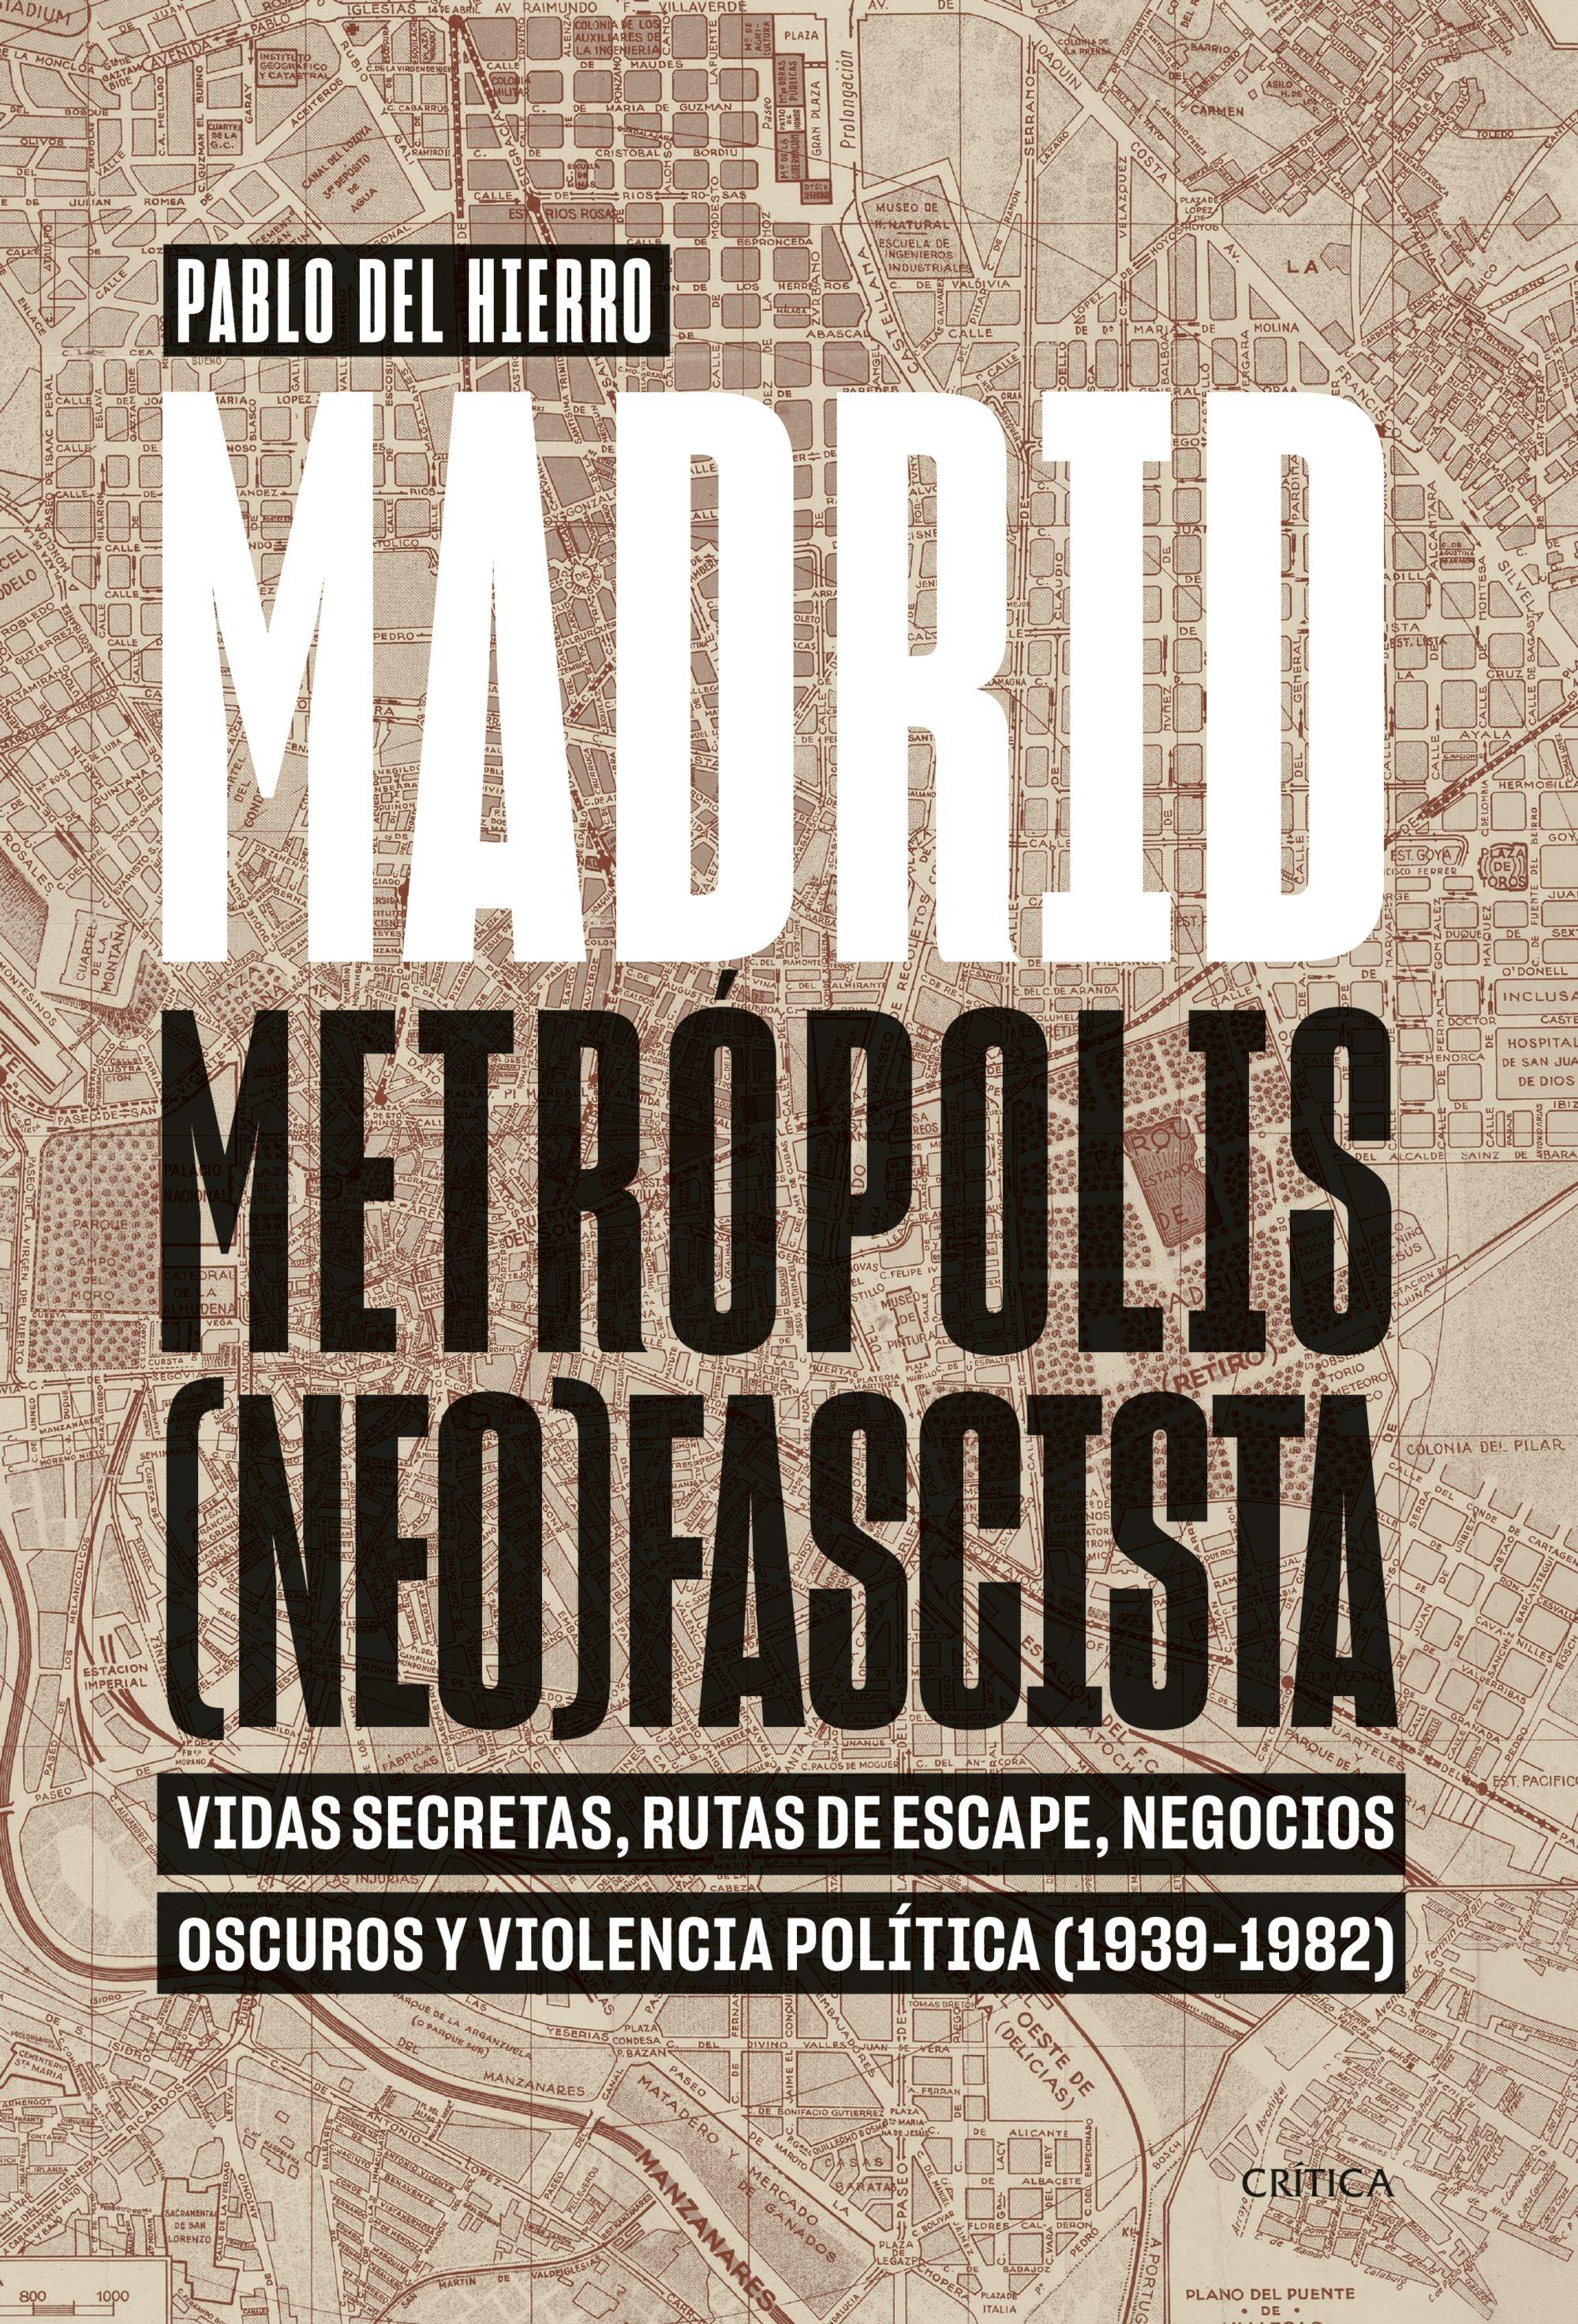 Madrid, Metrópolis (Neo)Fascista "Vidas Secretas, Rutas de Escape, Negocios Oscuros y Violencia Política (". 